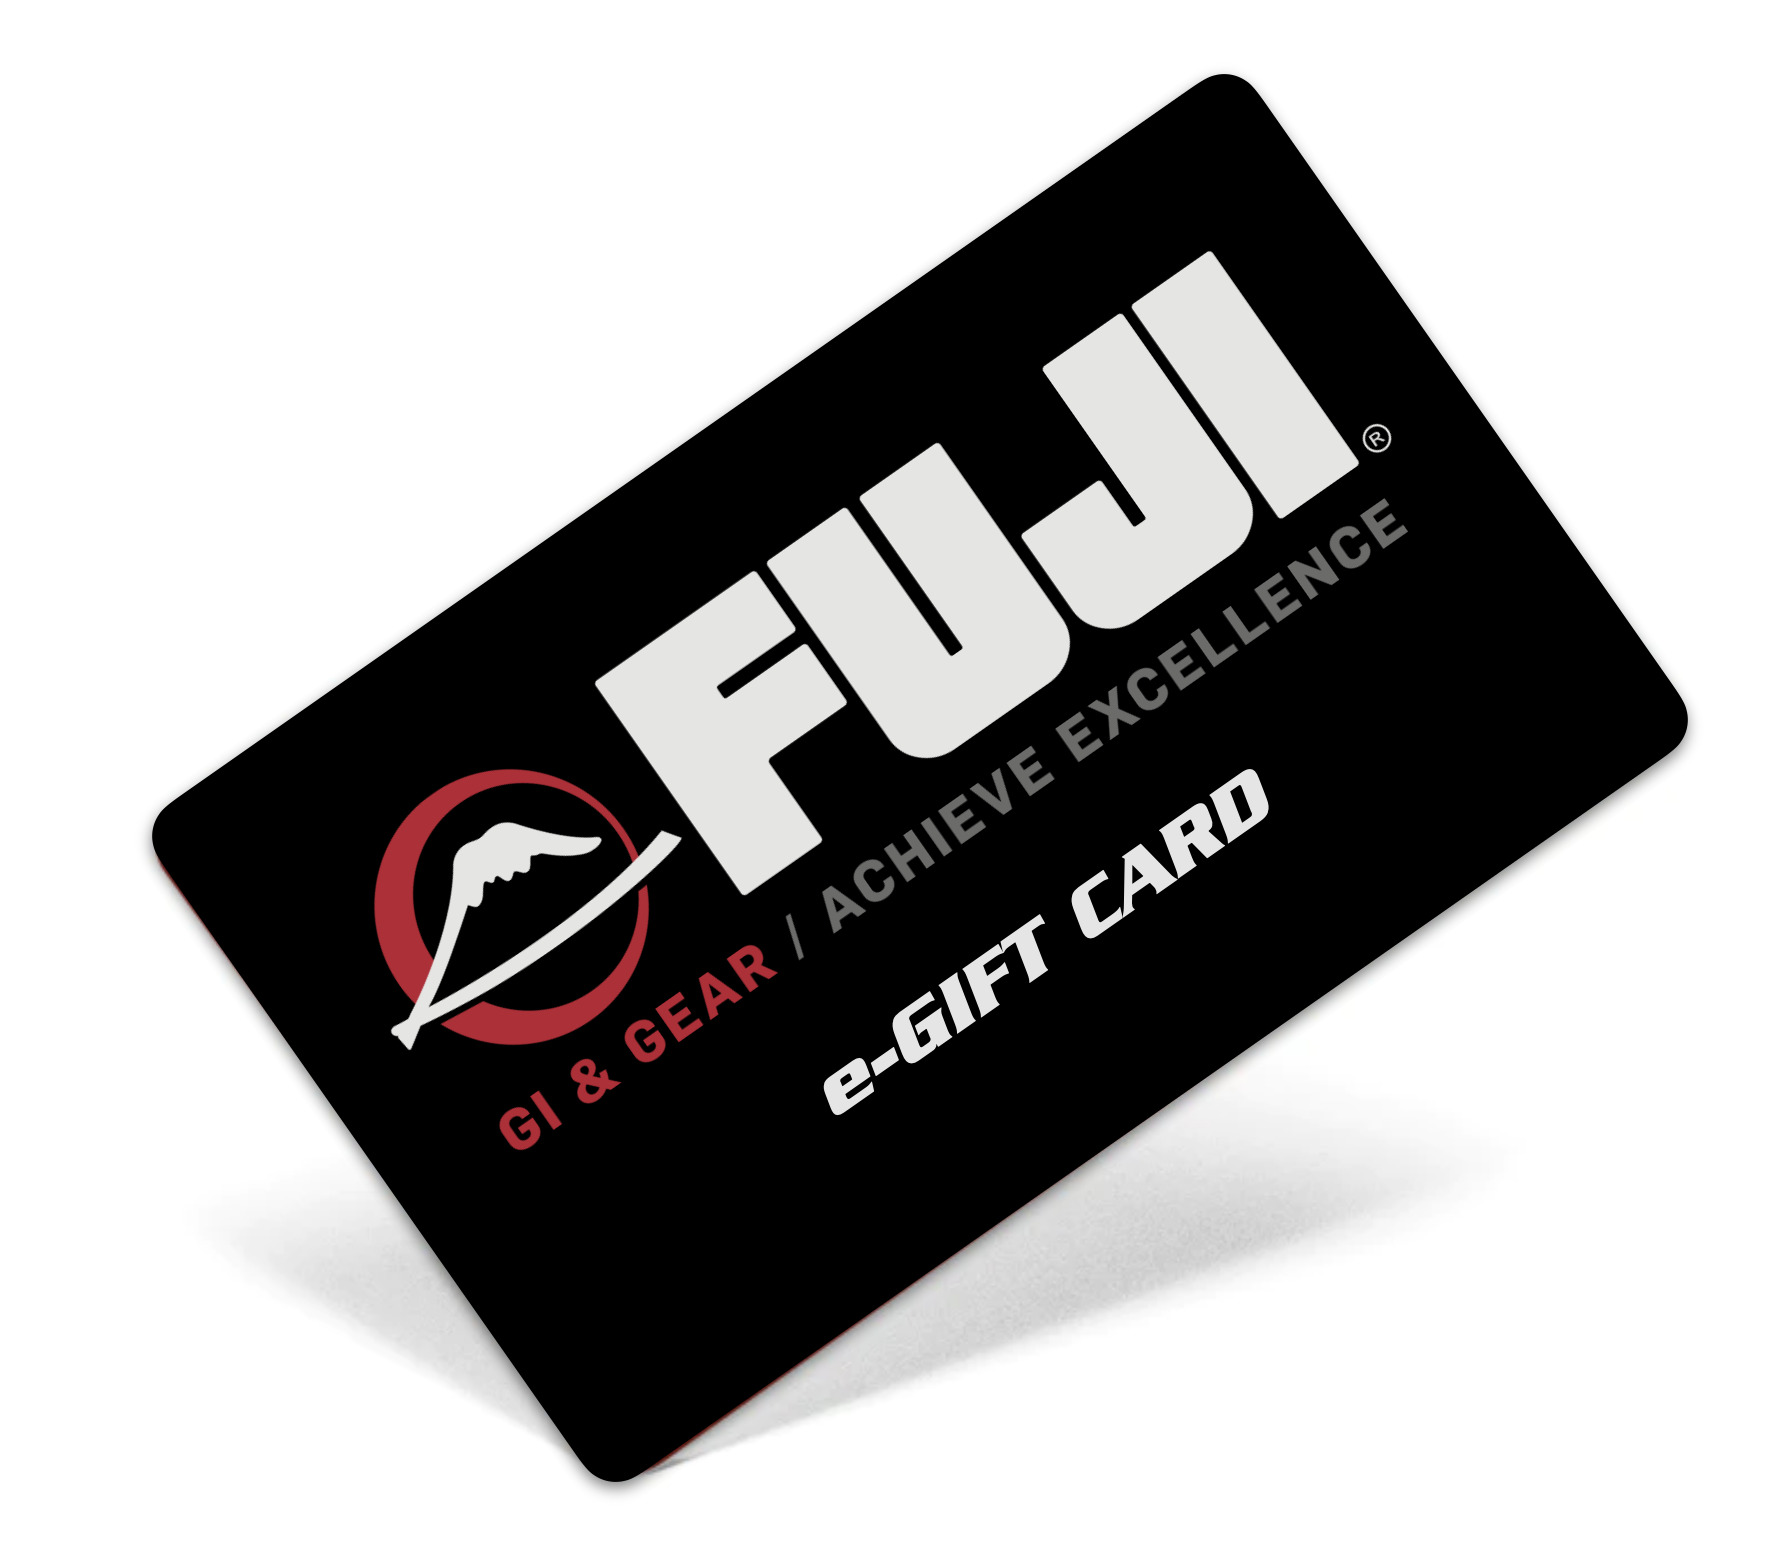 Using your Fuji Sports Australia E-Gift Voucher image